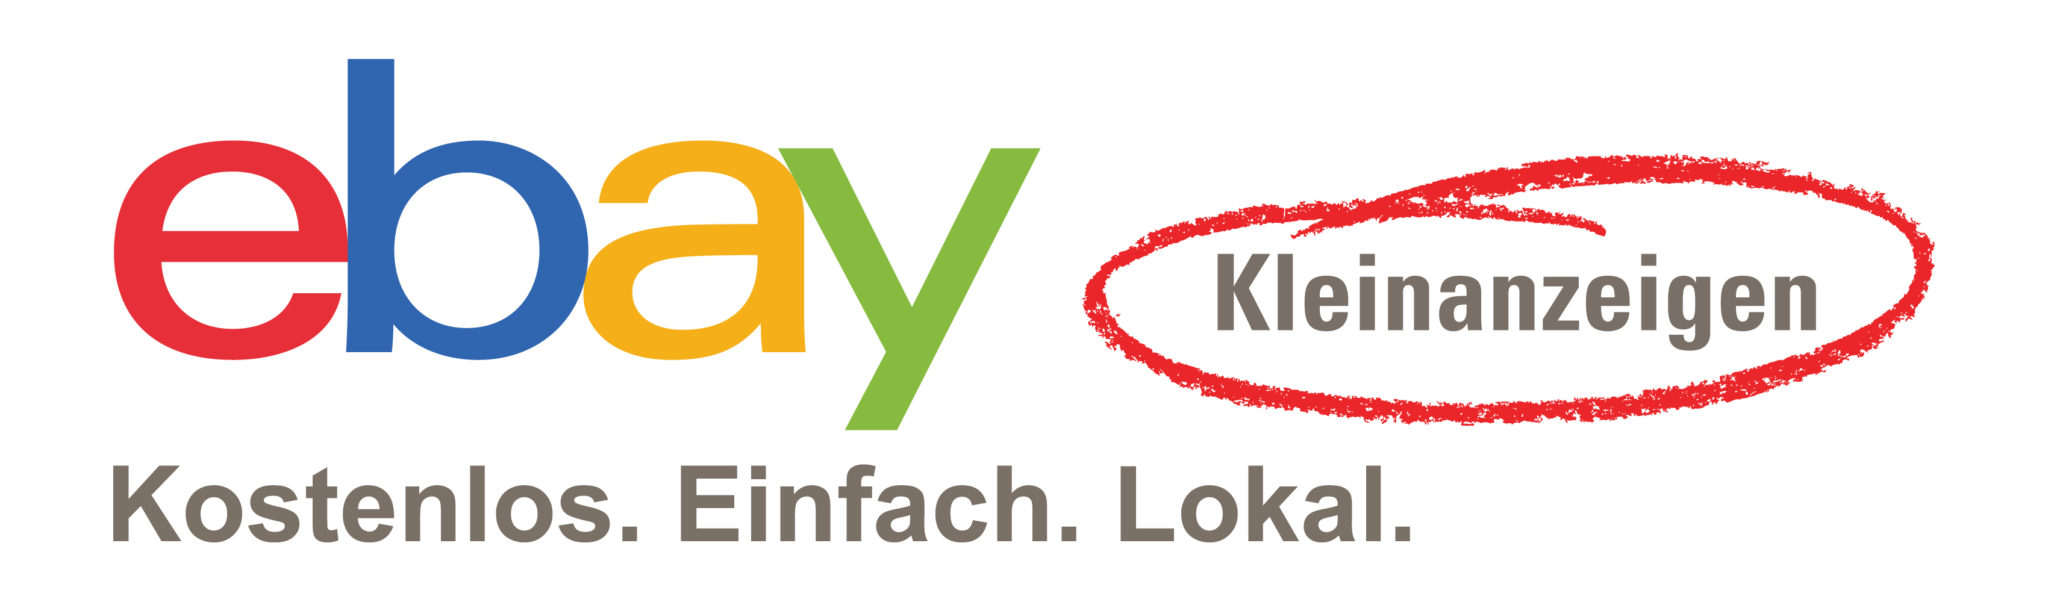 eBay Kleinanzeigen der unangefochtene Champion in Deutschland